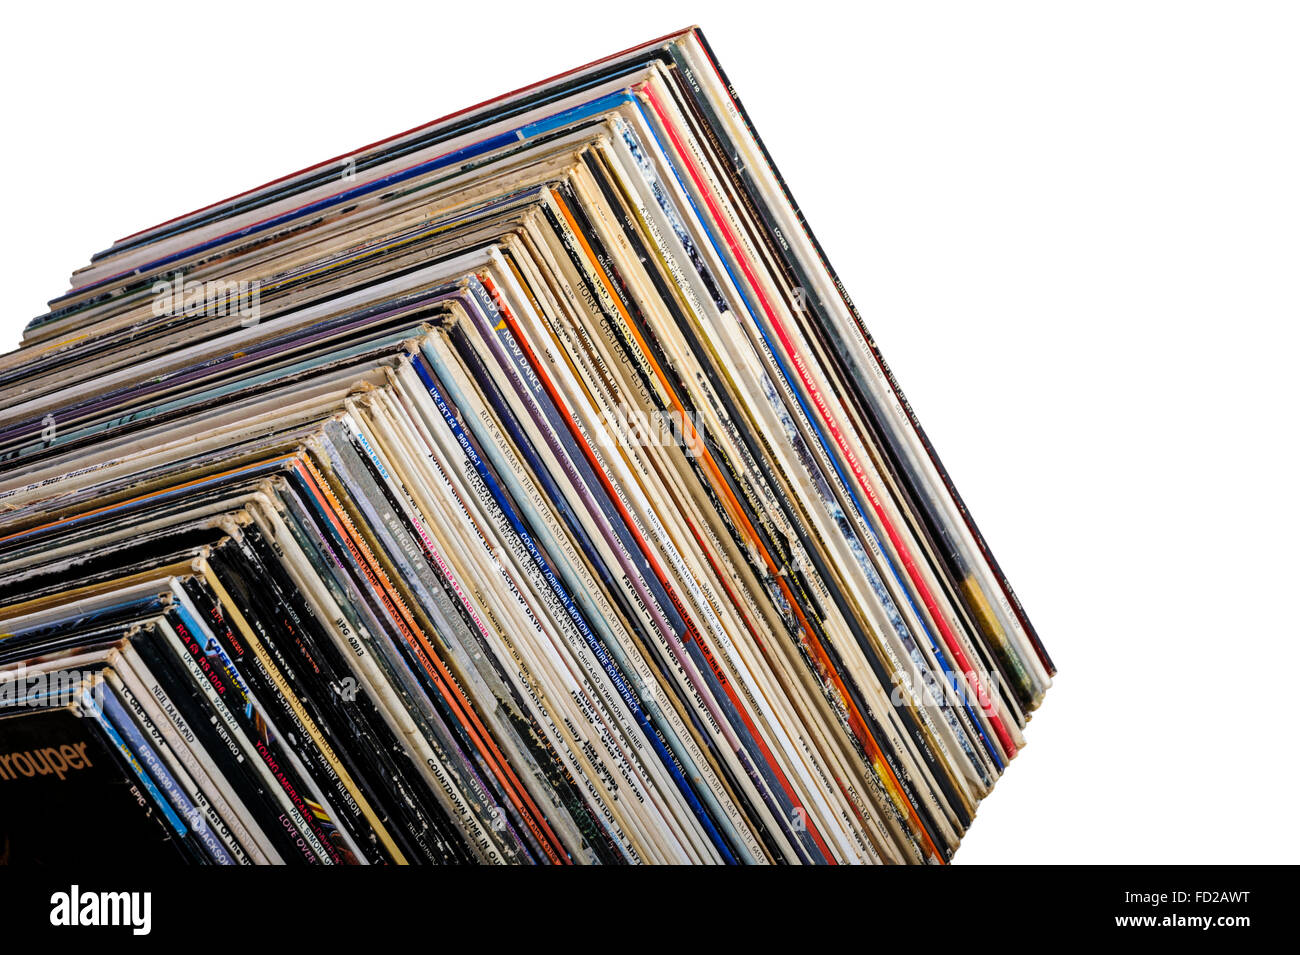 Eine Reihe von lange spielen Vinyl-Alben, Winkel beschossen. Stockfoto